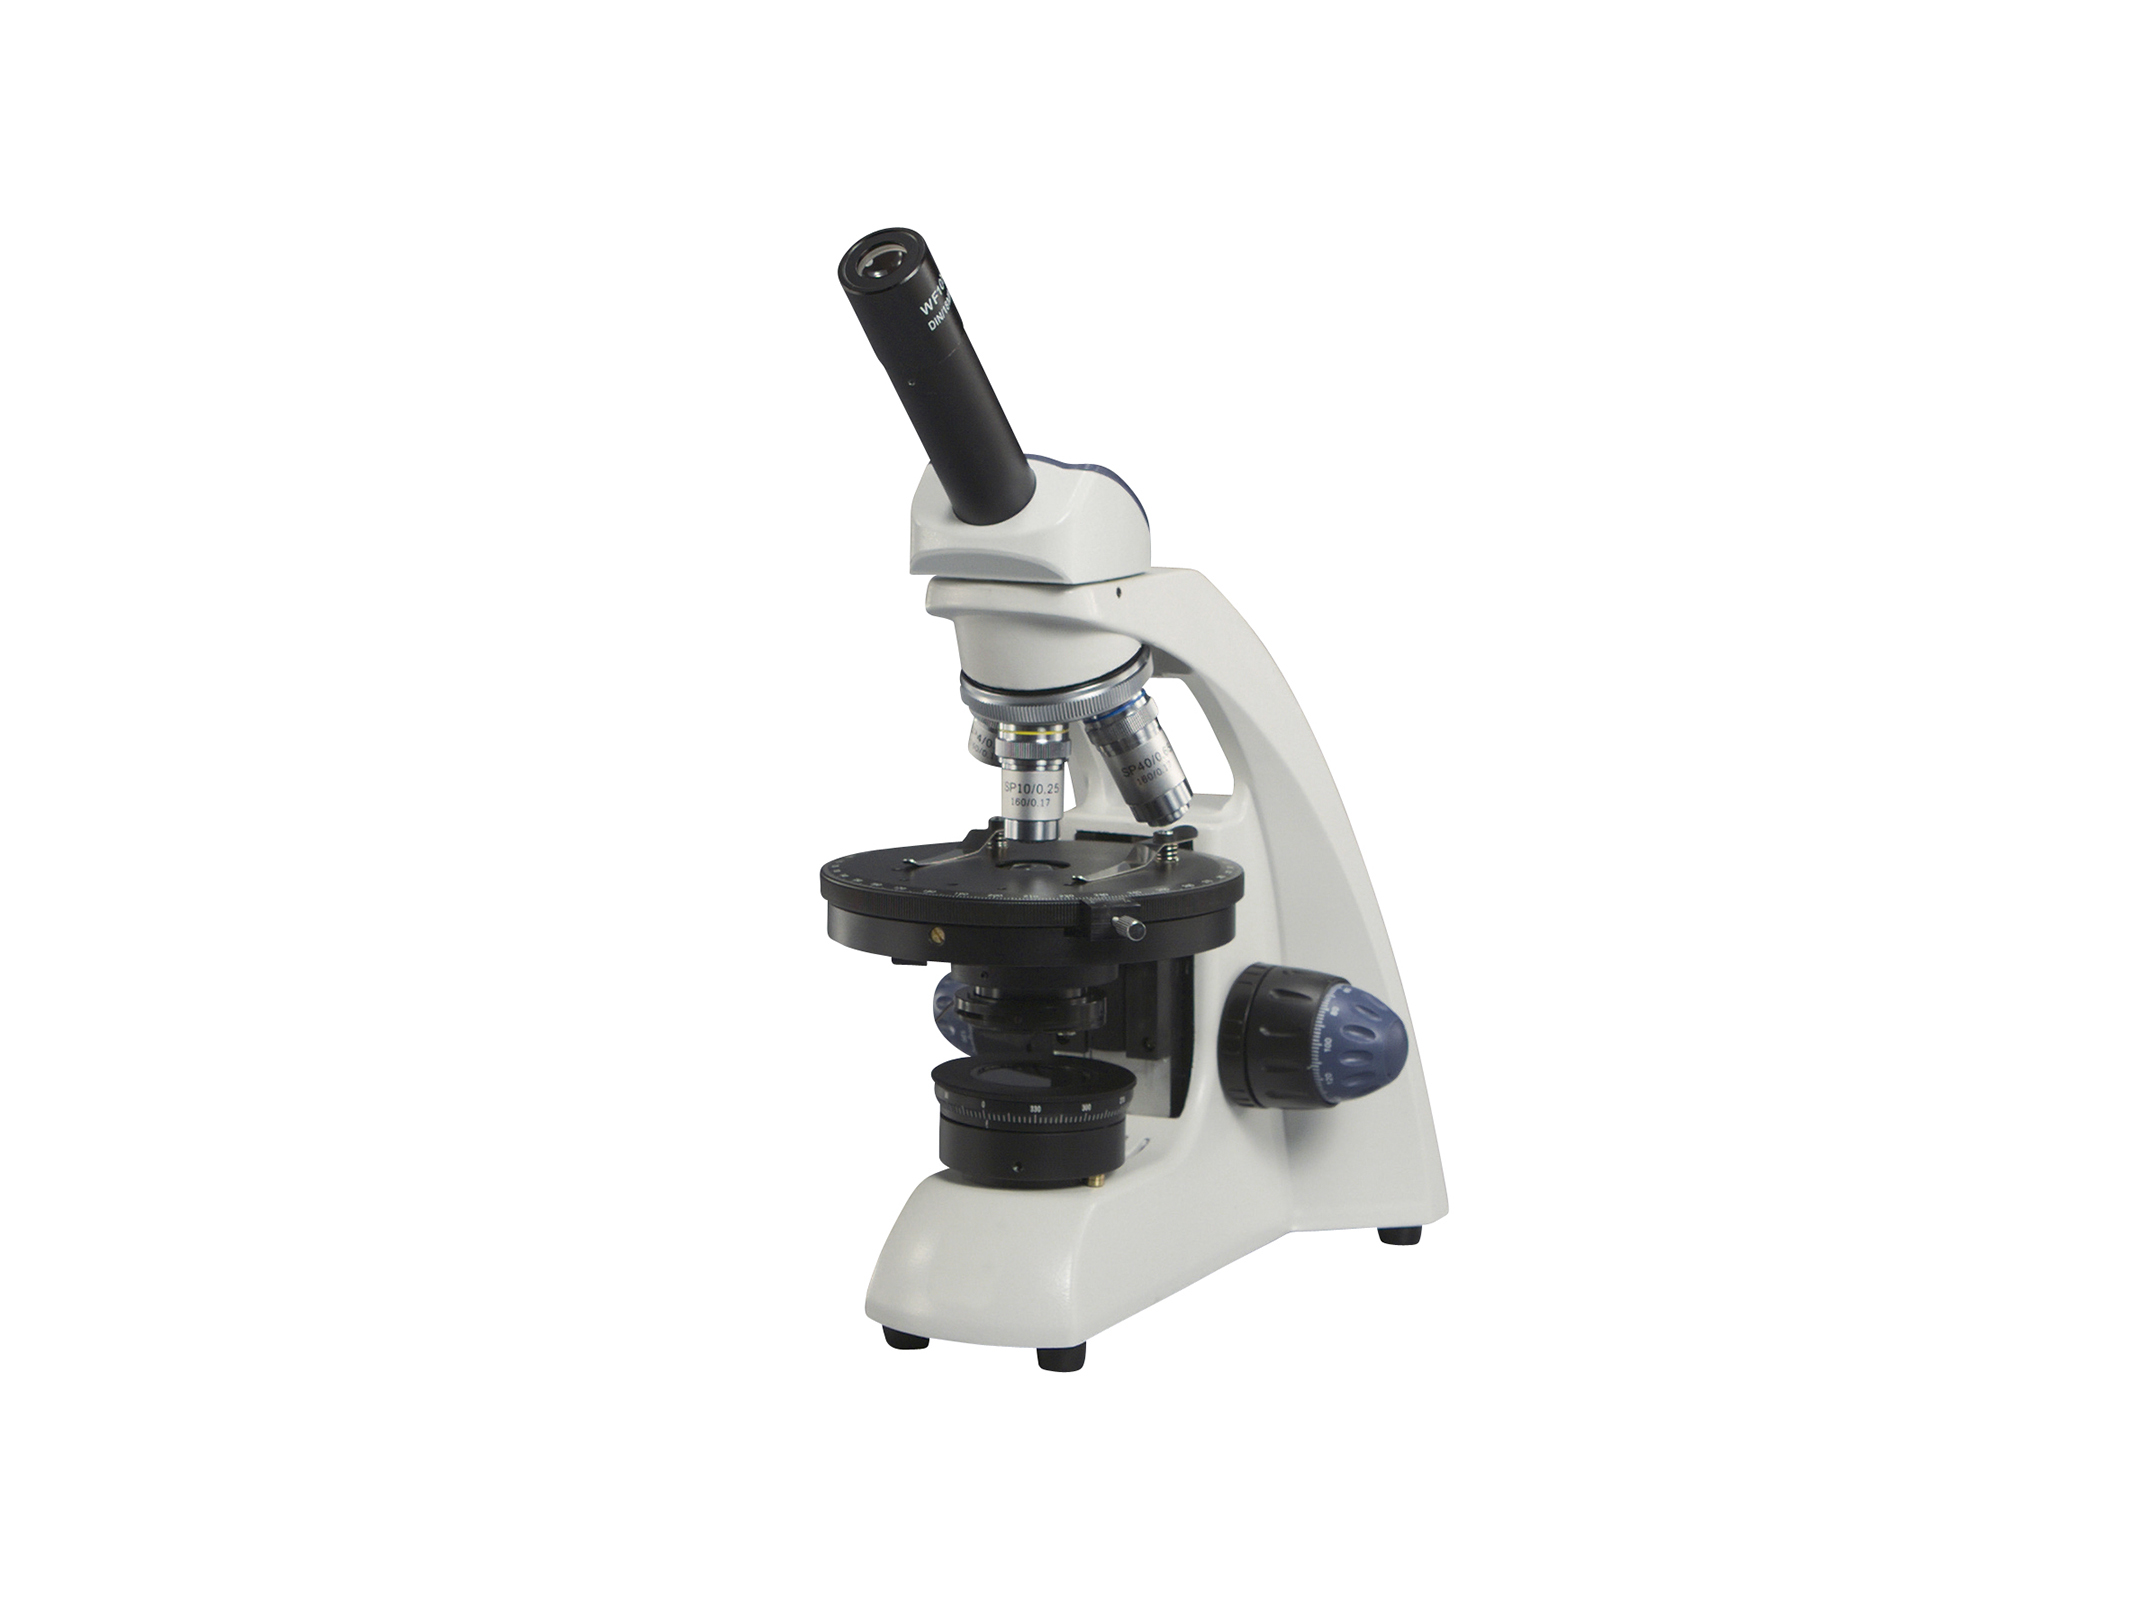 メイジテクノ偏光顕微鏡(鉱物顕微鏡) MT-90 - 道具、工具